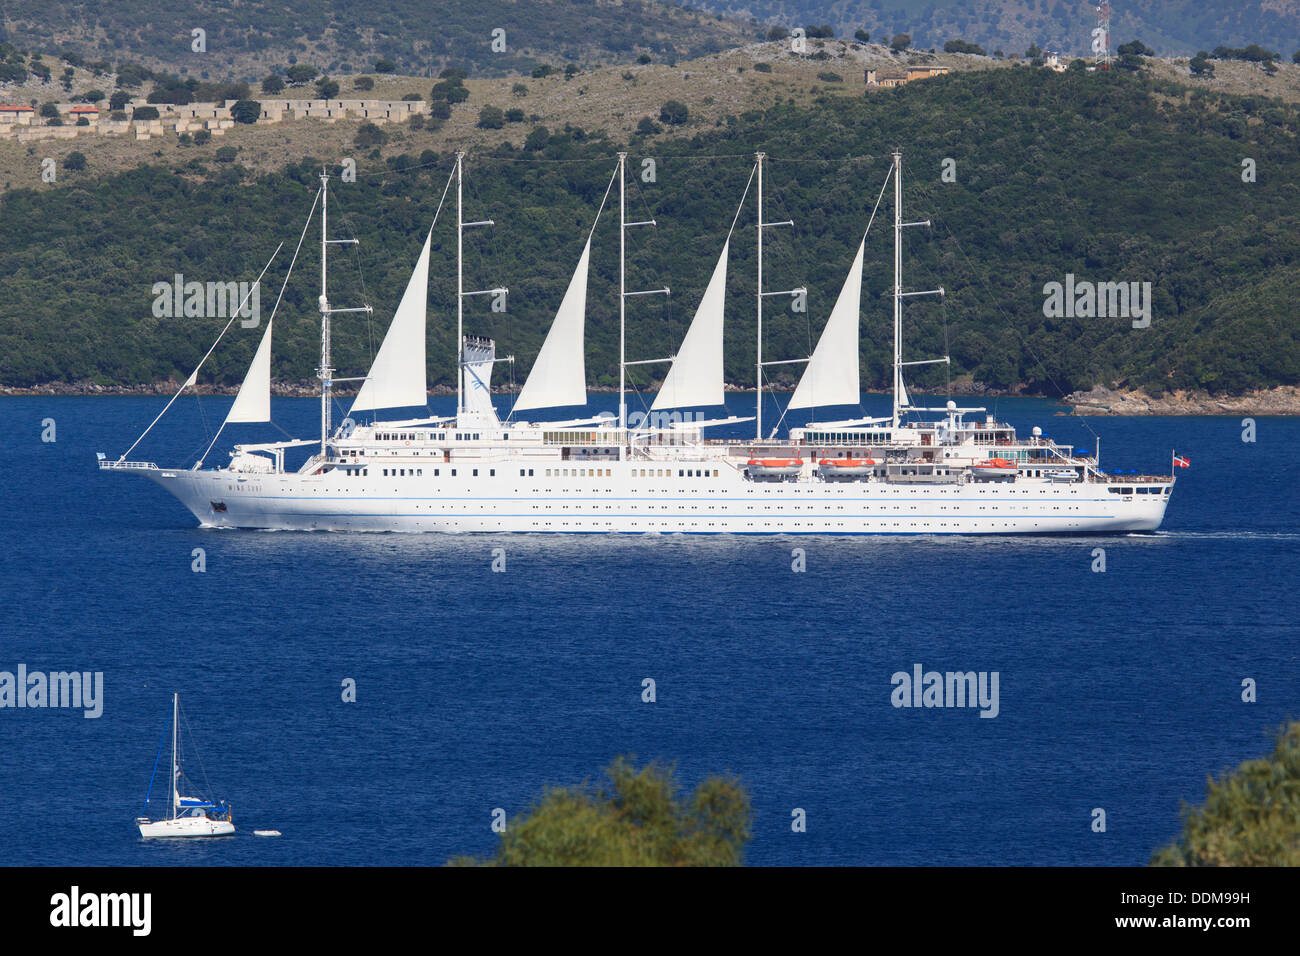 Wind Surf luxury sailing cruise ship sailing past Corfu Stock Photo